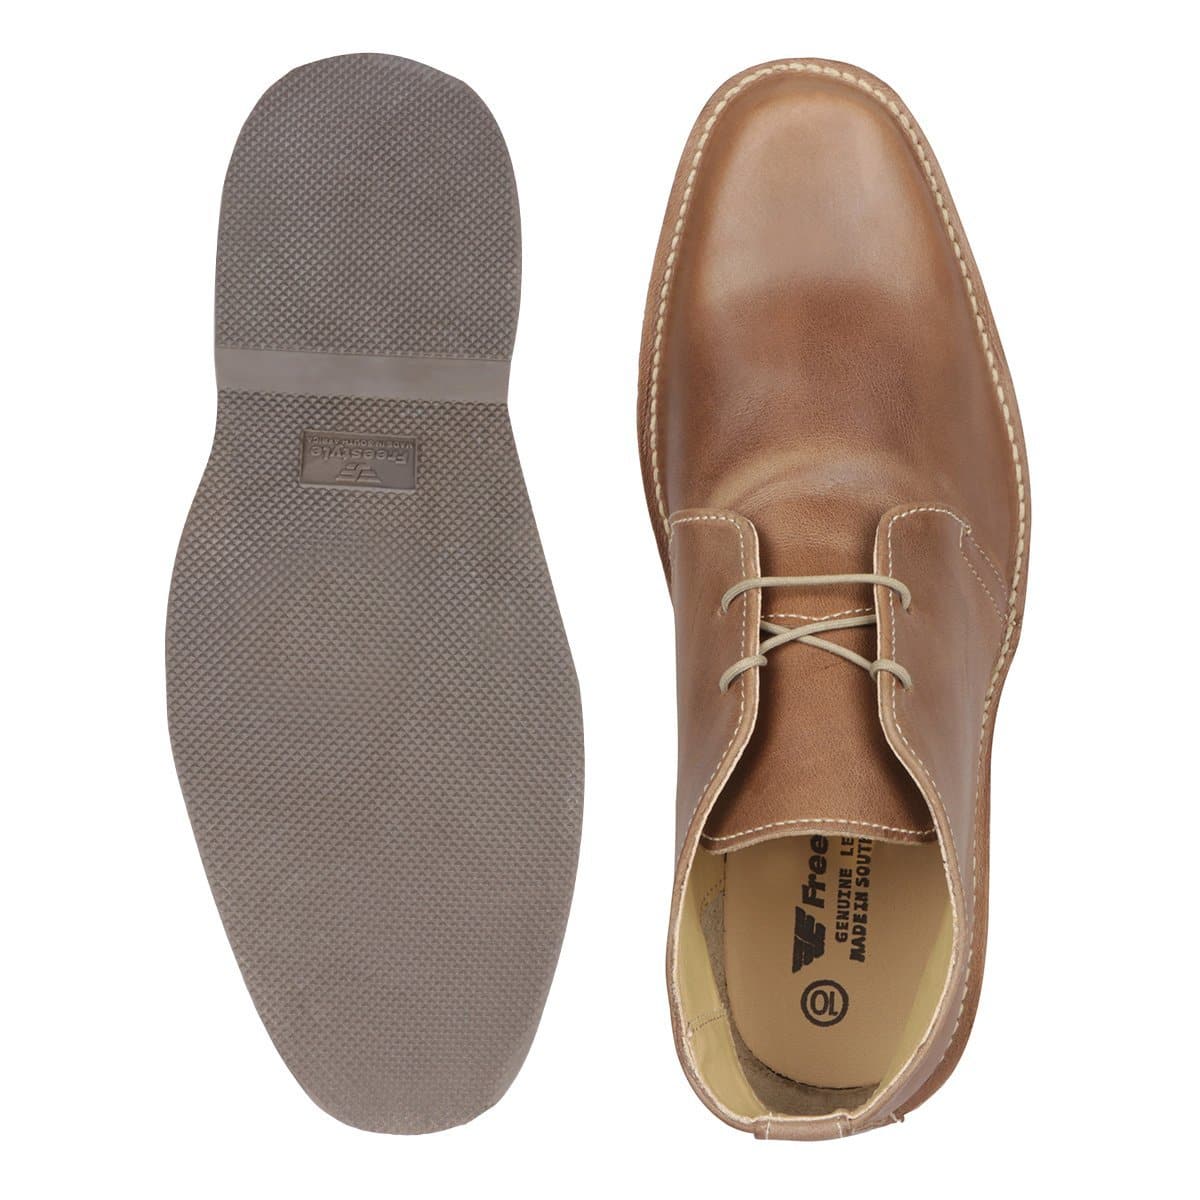 Bongani Premium Leather Veldskoen - Freestyle SA Proudly local leather boots veldskoens vellies leather shoes suede veldskoens